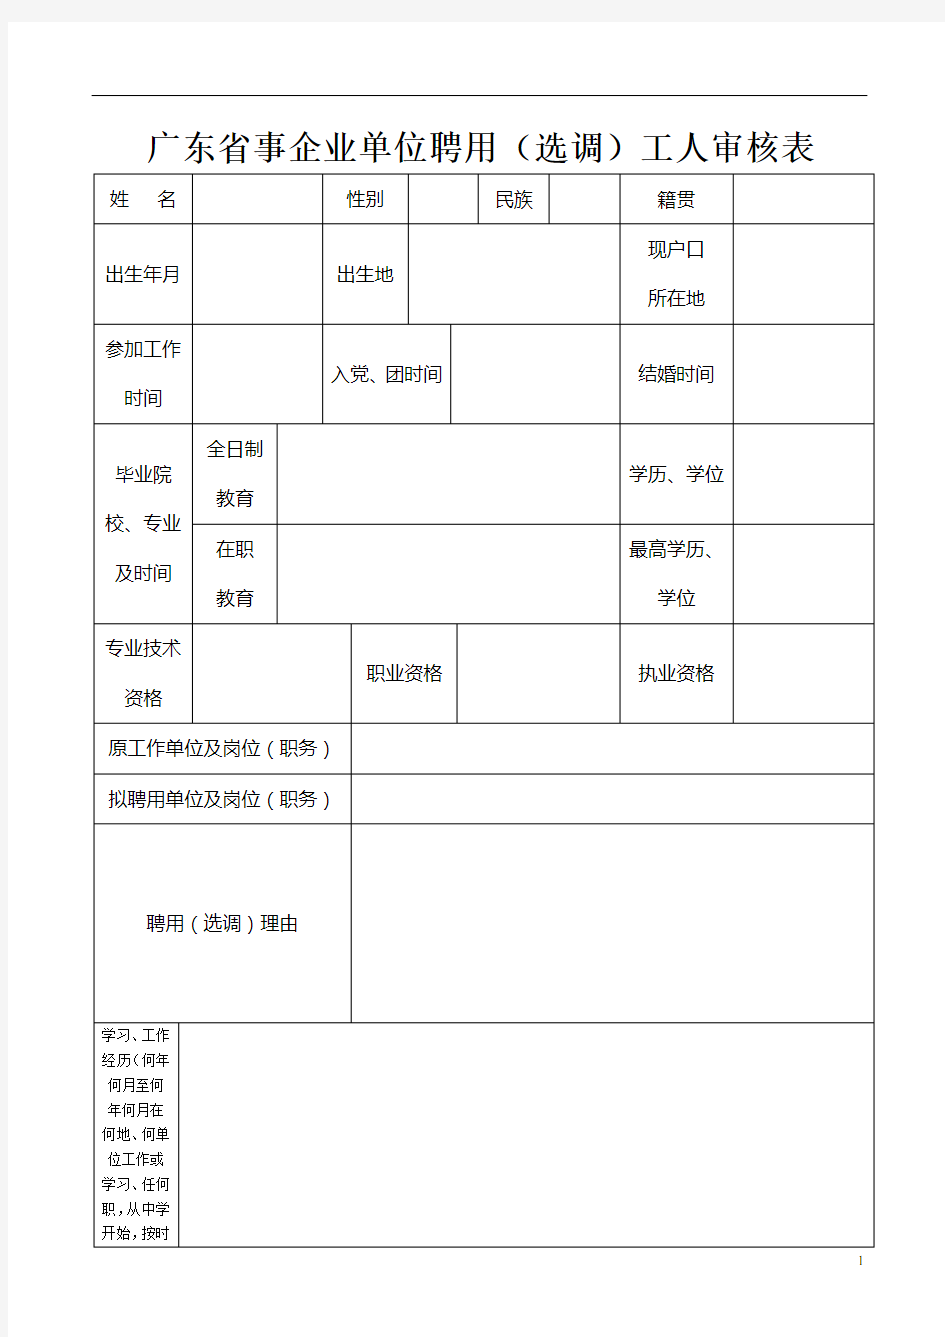 广东省事企业单位聘用(选调)工人审核表(调进工人填写)